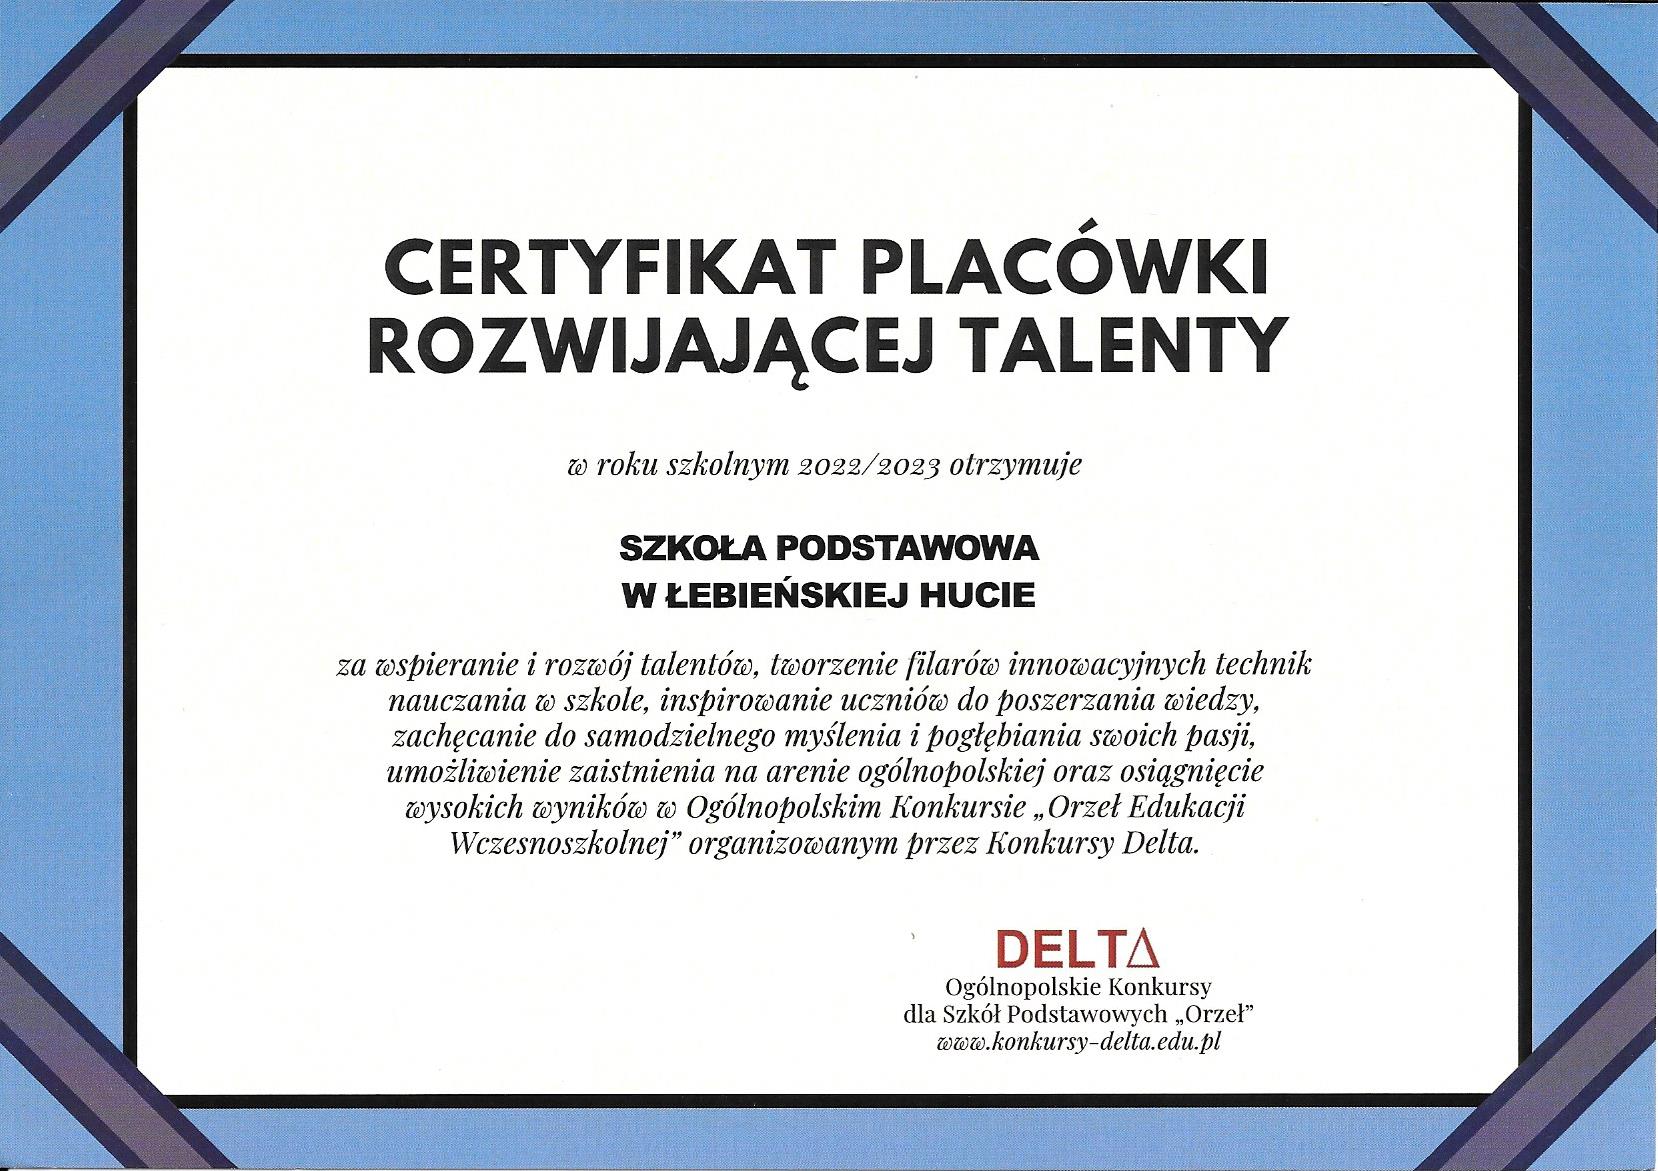  Nasi uczniowie laureatami Ogólnopolskiego Konkursu ''Orzeł Matematyczny''